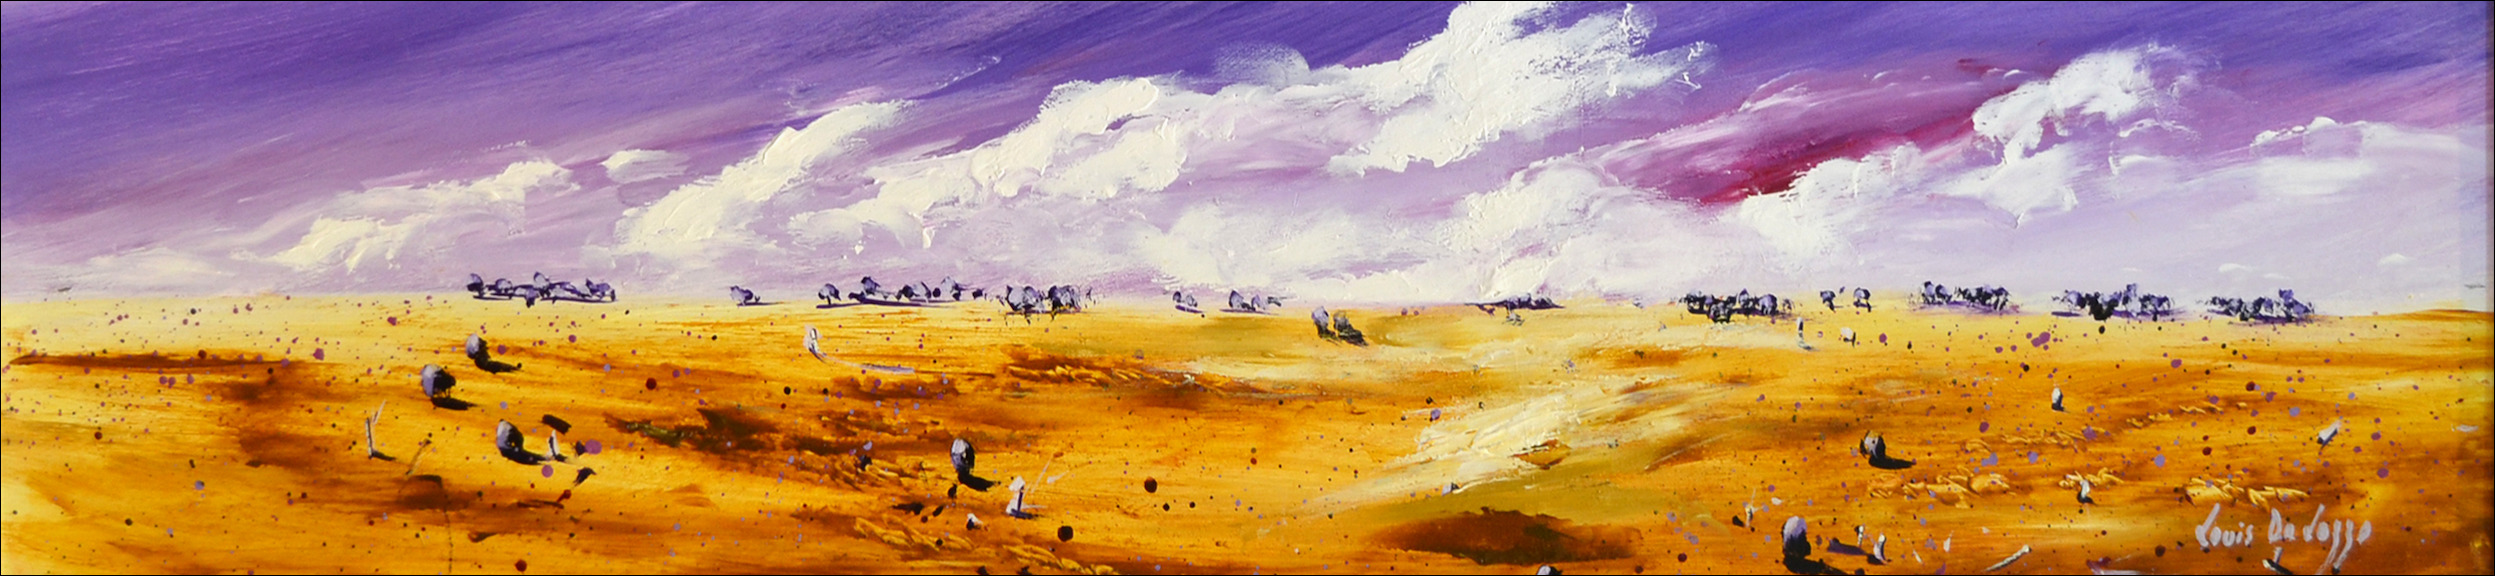 Distant Ranges Landscape "Storm over The Western Plains" Original Artwork by Louis Dalozzo